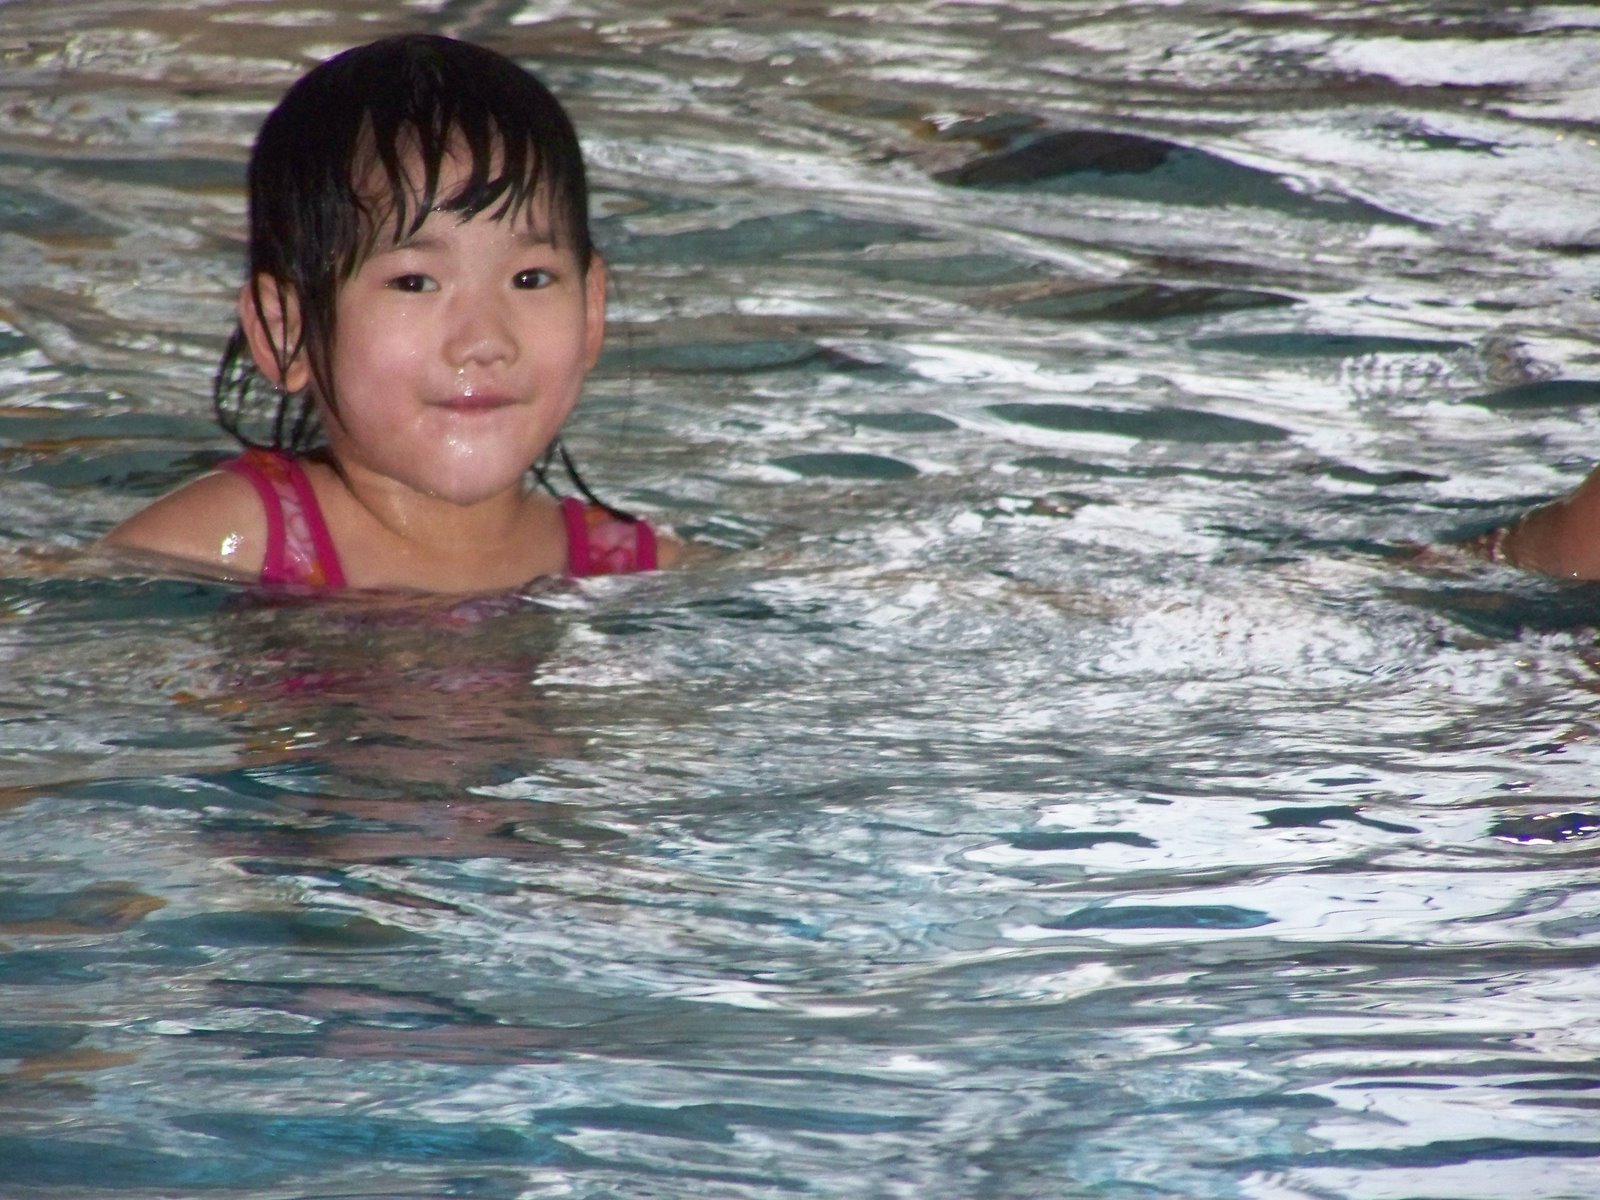 [sarah+swimming-03.jpg]